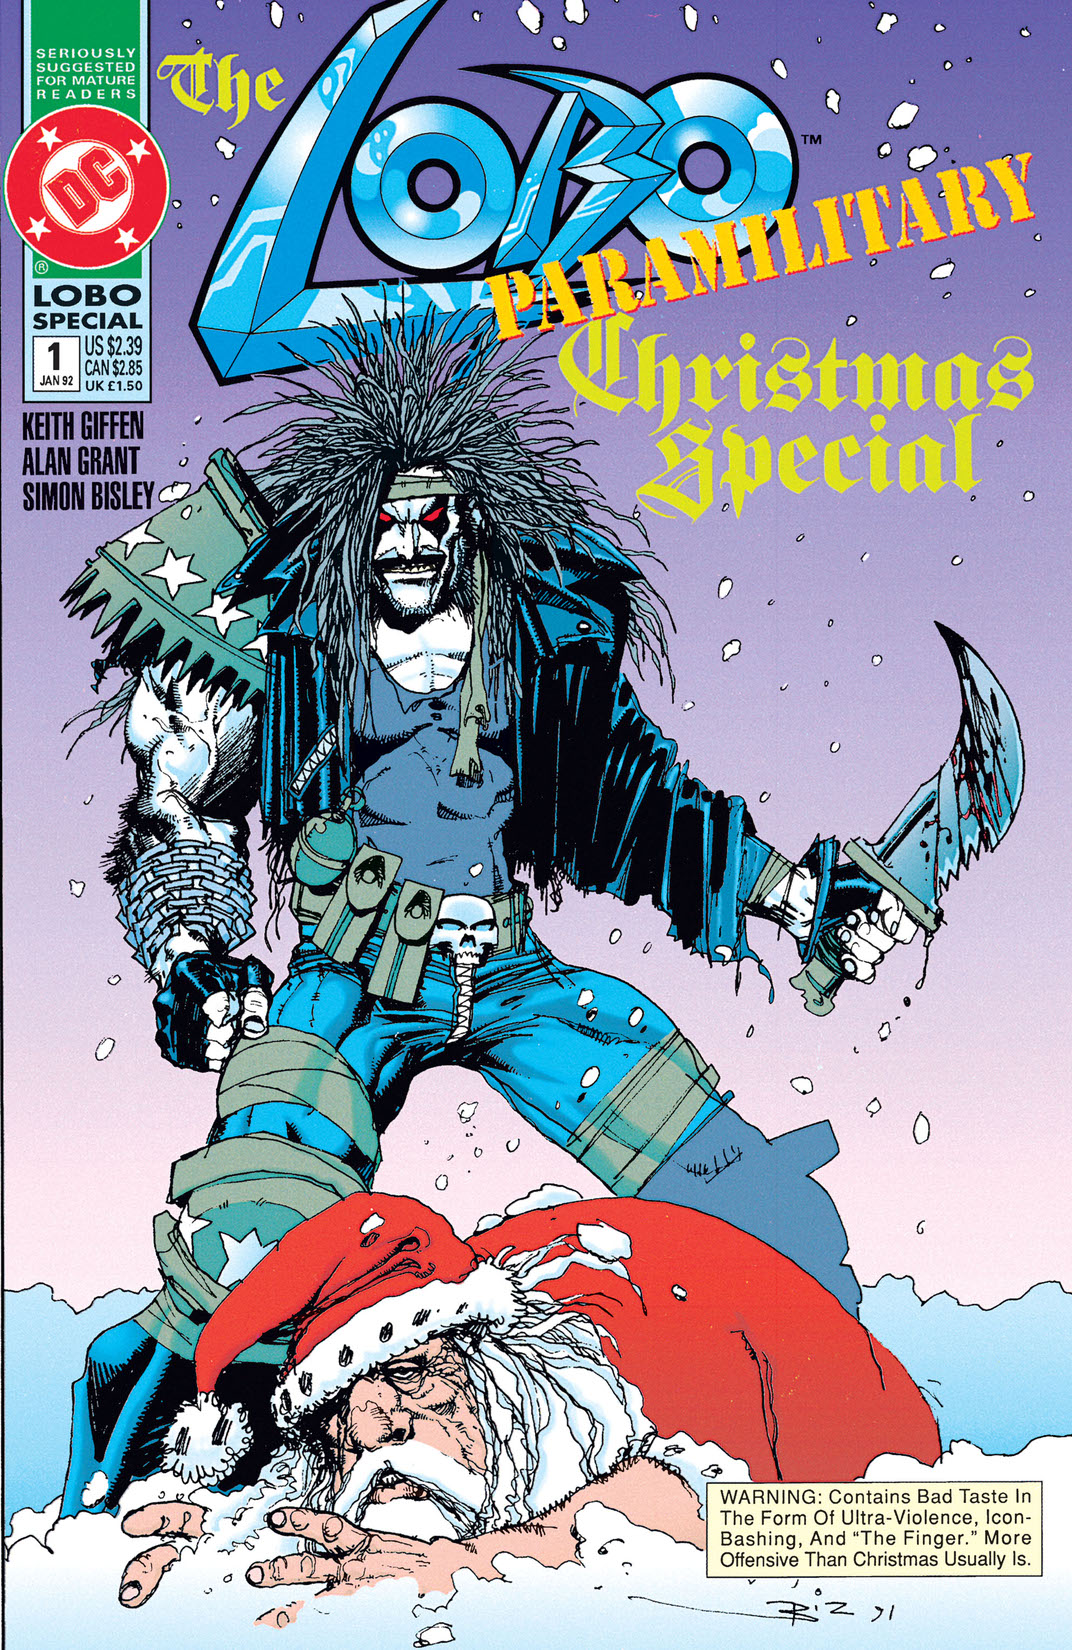 Lobo Paramilitary Christmas Special (1991-) #1 preview images